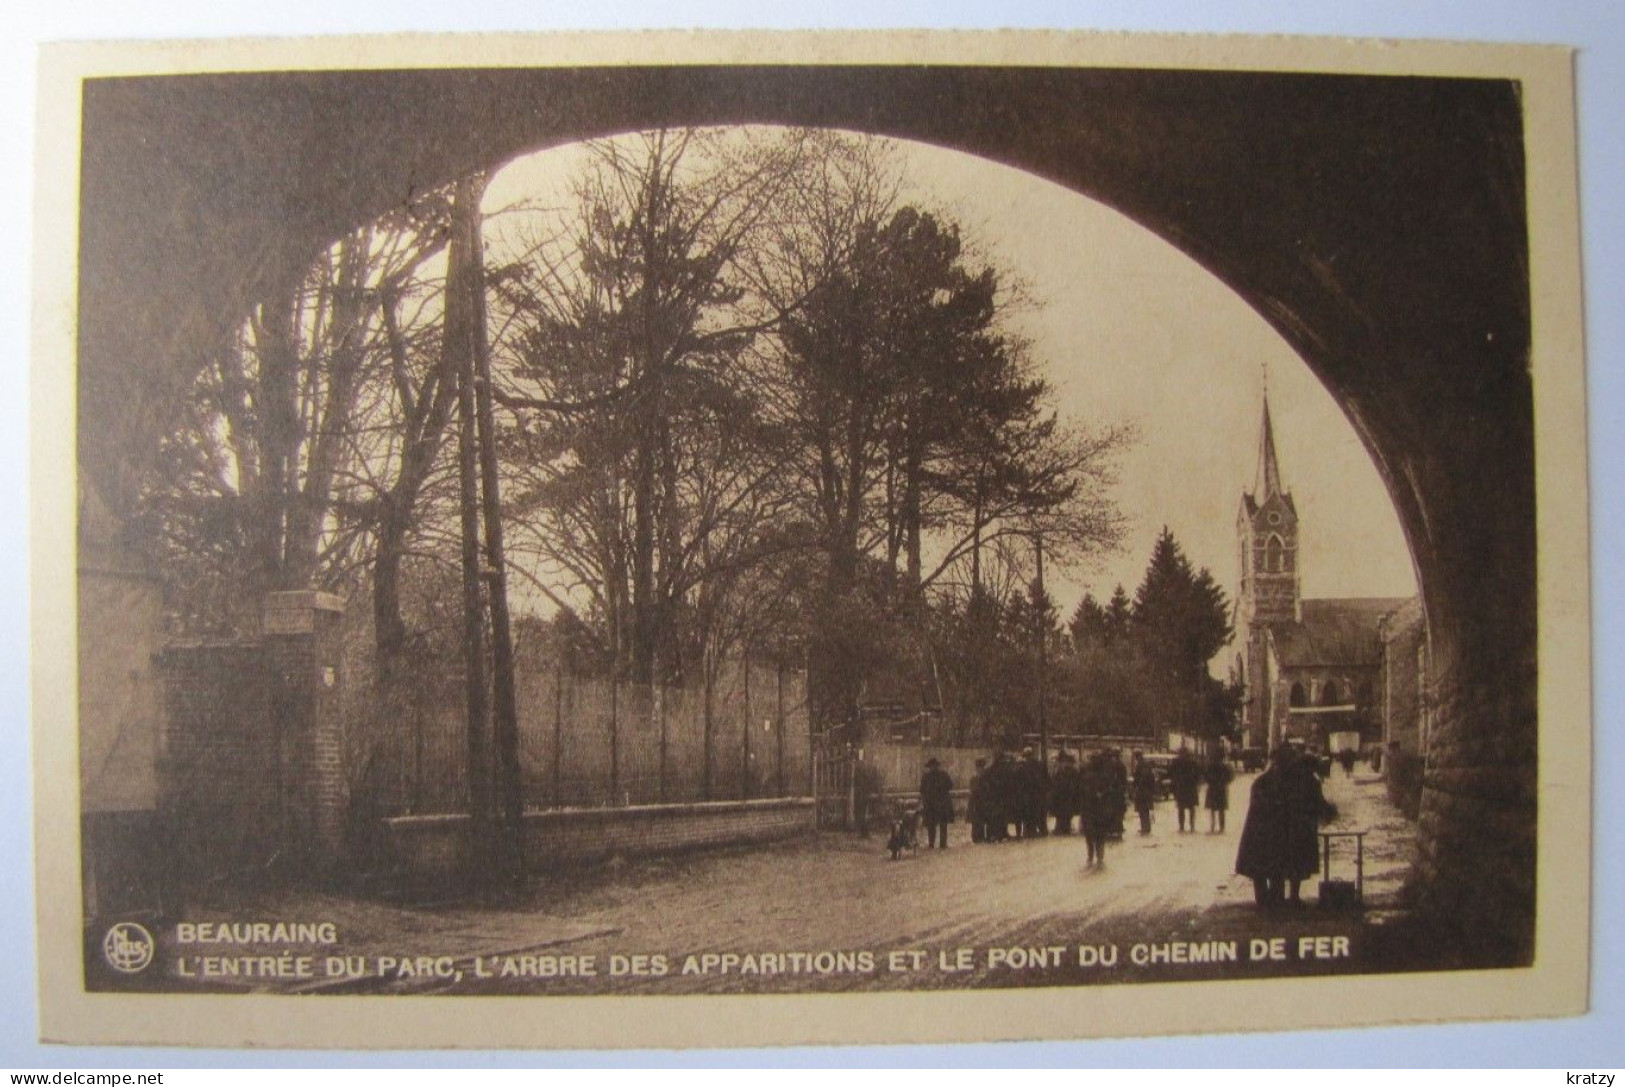 BELGIQUE - NAMUR - BEAURAING - L'Entrée Du Parc, L'Arbre Des Apparitions Et Le Pont Du Chemin De Fer - 1933 - Beauraing